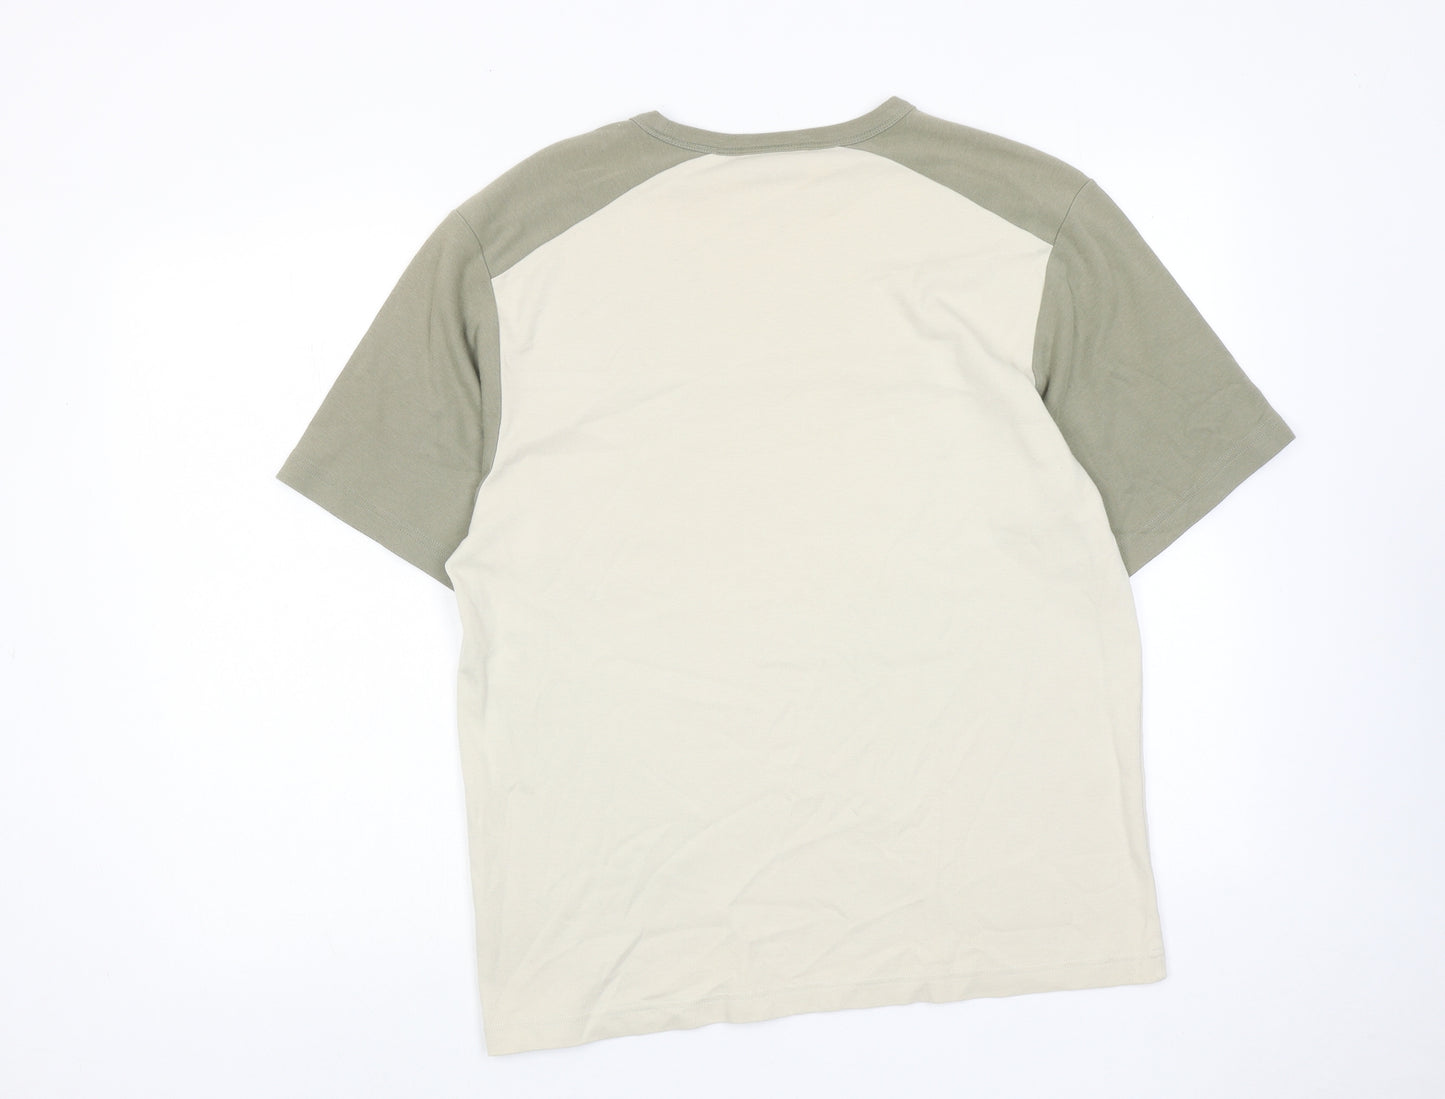 West Rock Mens Beige Colourblock Cotton T-Shirt Size S Round Neck